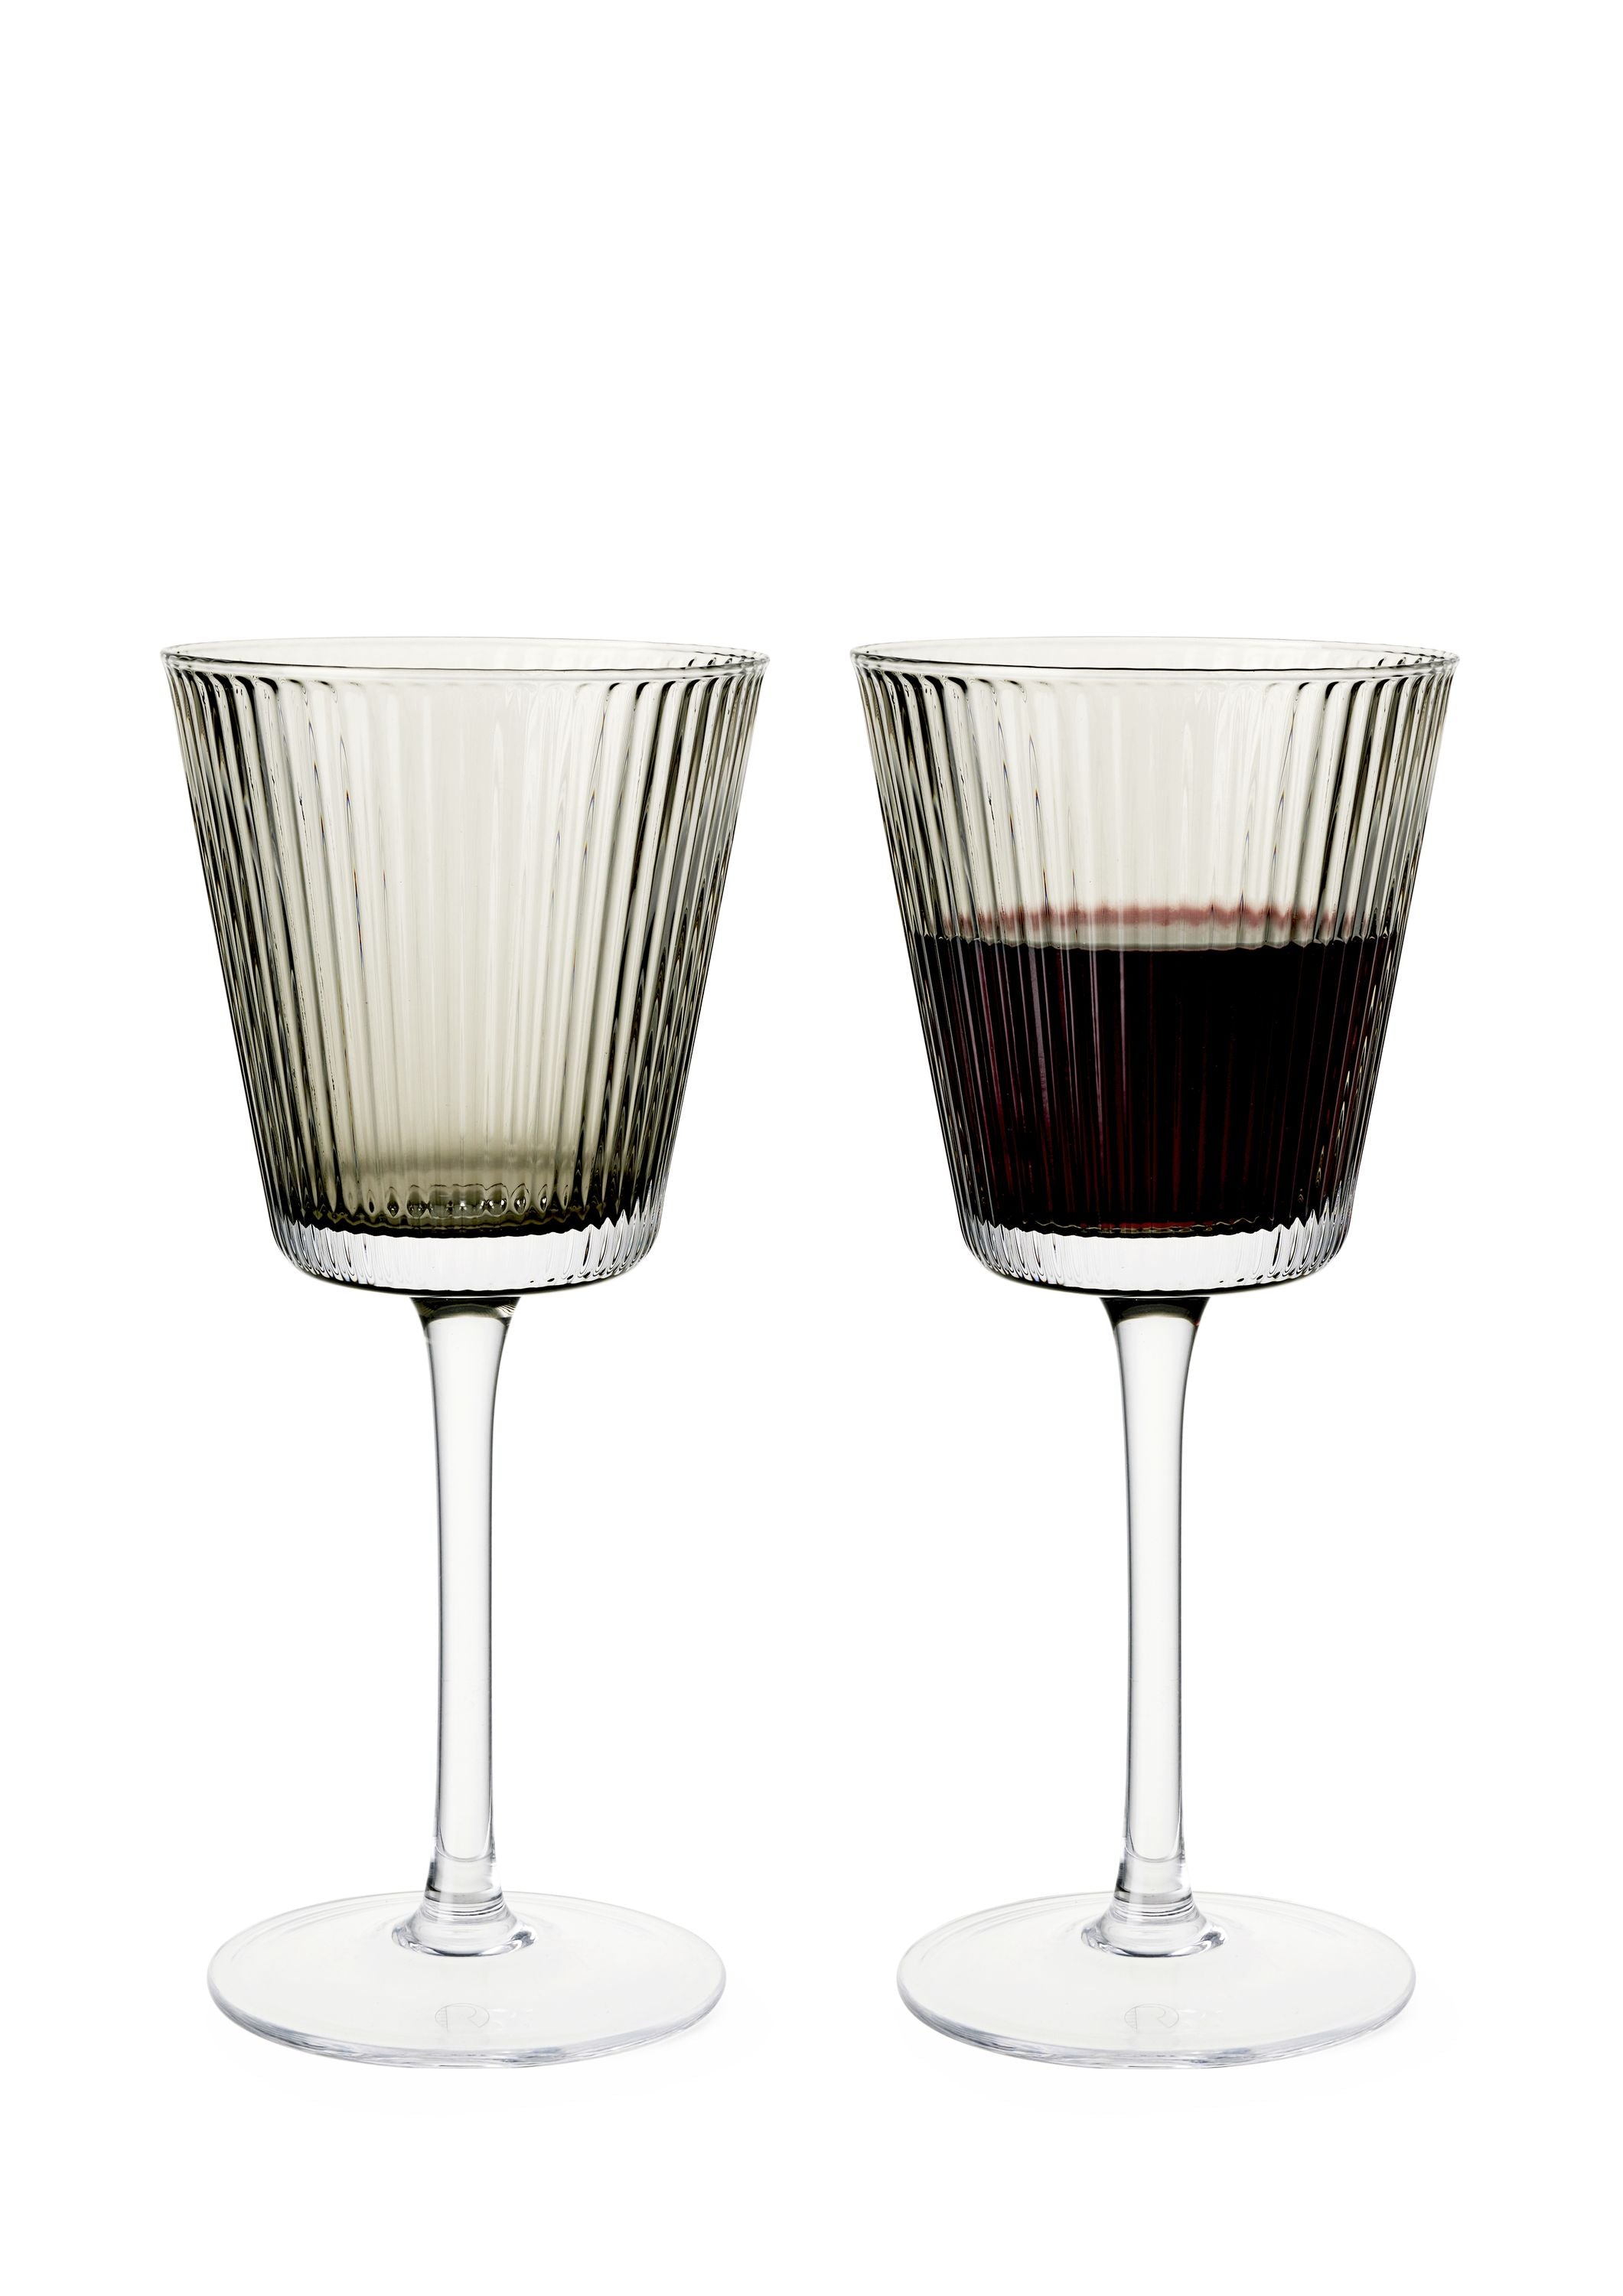 Rosendahl GC Nouveau Wine Glass 18 Cl ROOK 2 PCS.